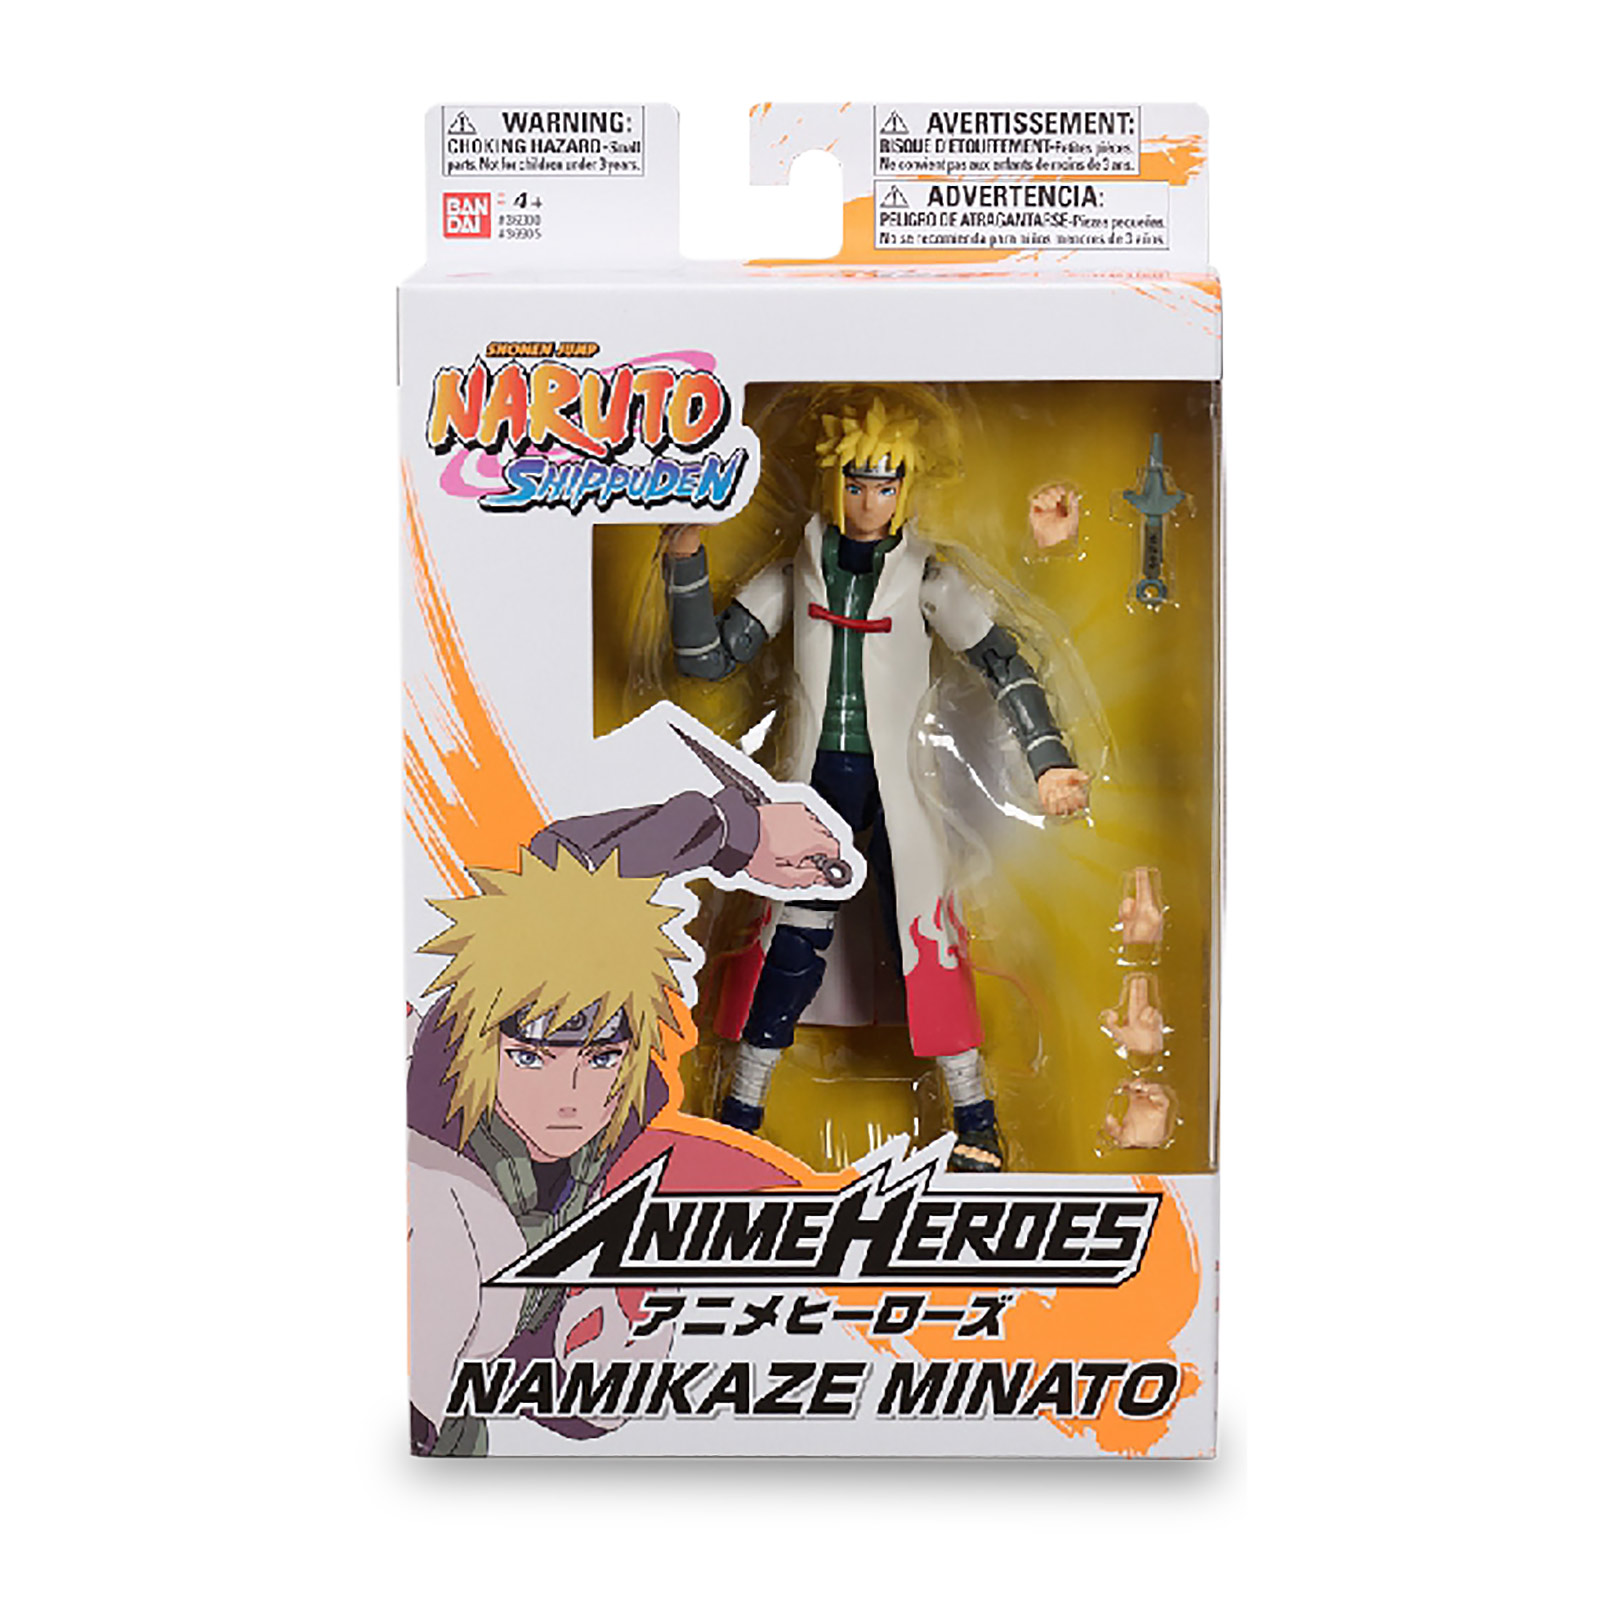 Naruto Shippuden - Namikaze Minato Anime Heroes Action Figure